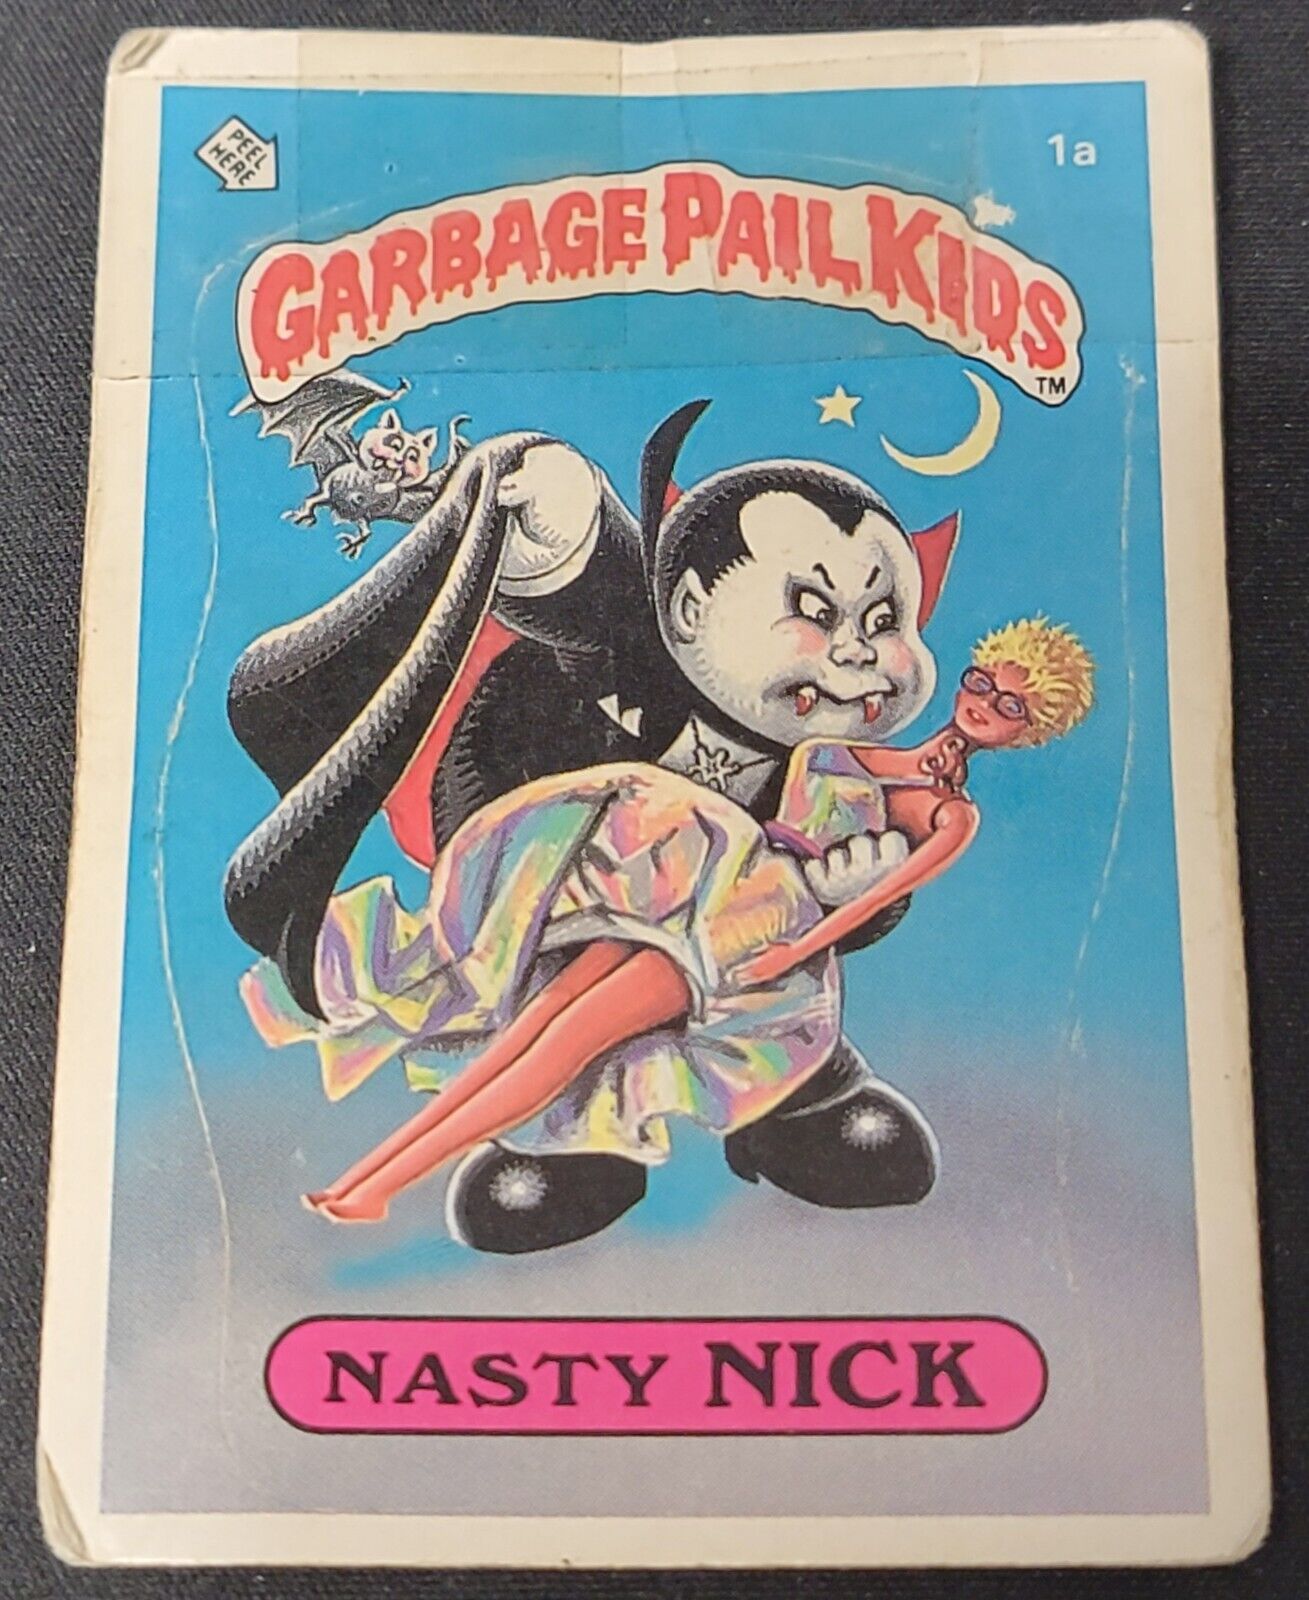 1985 Garbage Pail Kids 1st Series 1 Nasty Nick 1a Matte Back Card 1 Star Worn